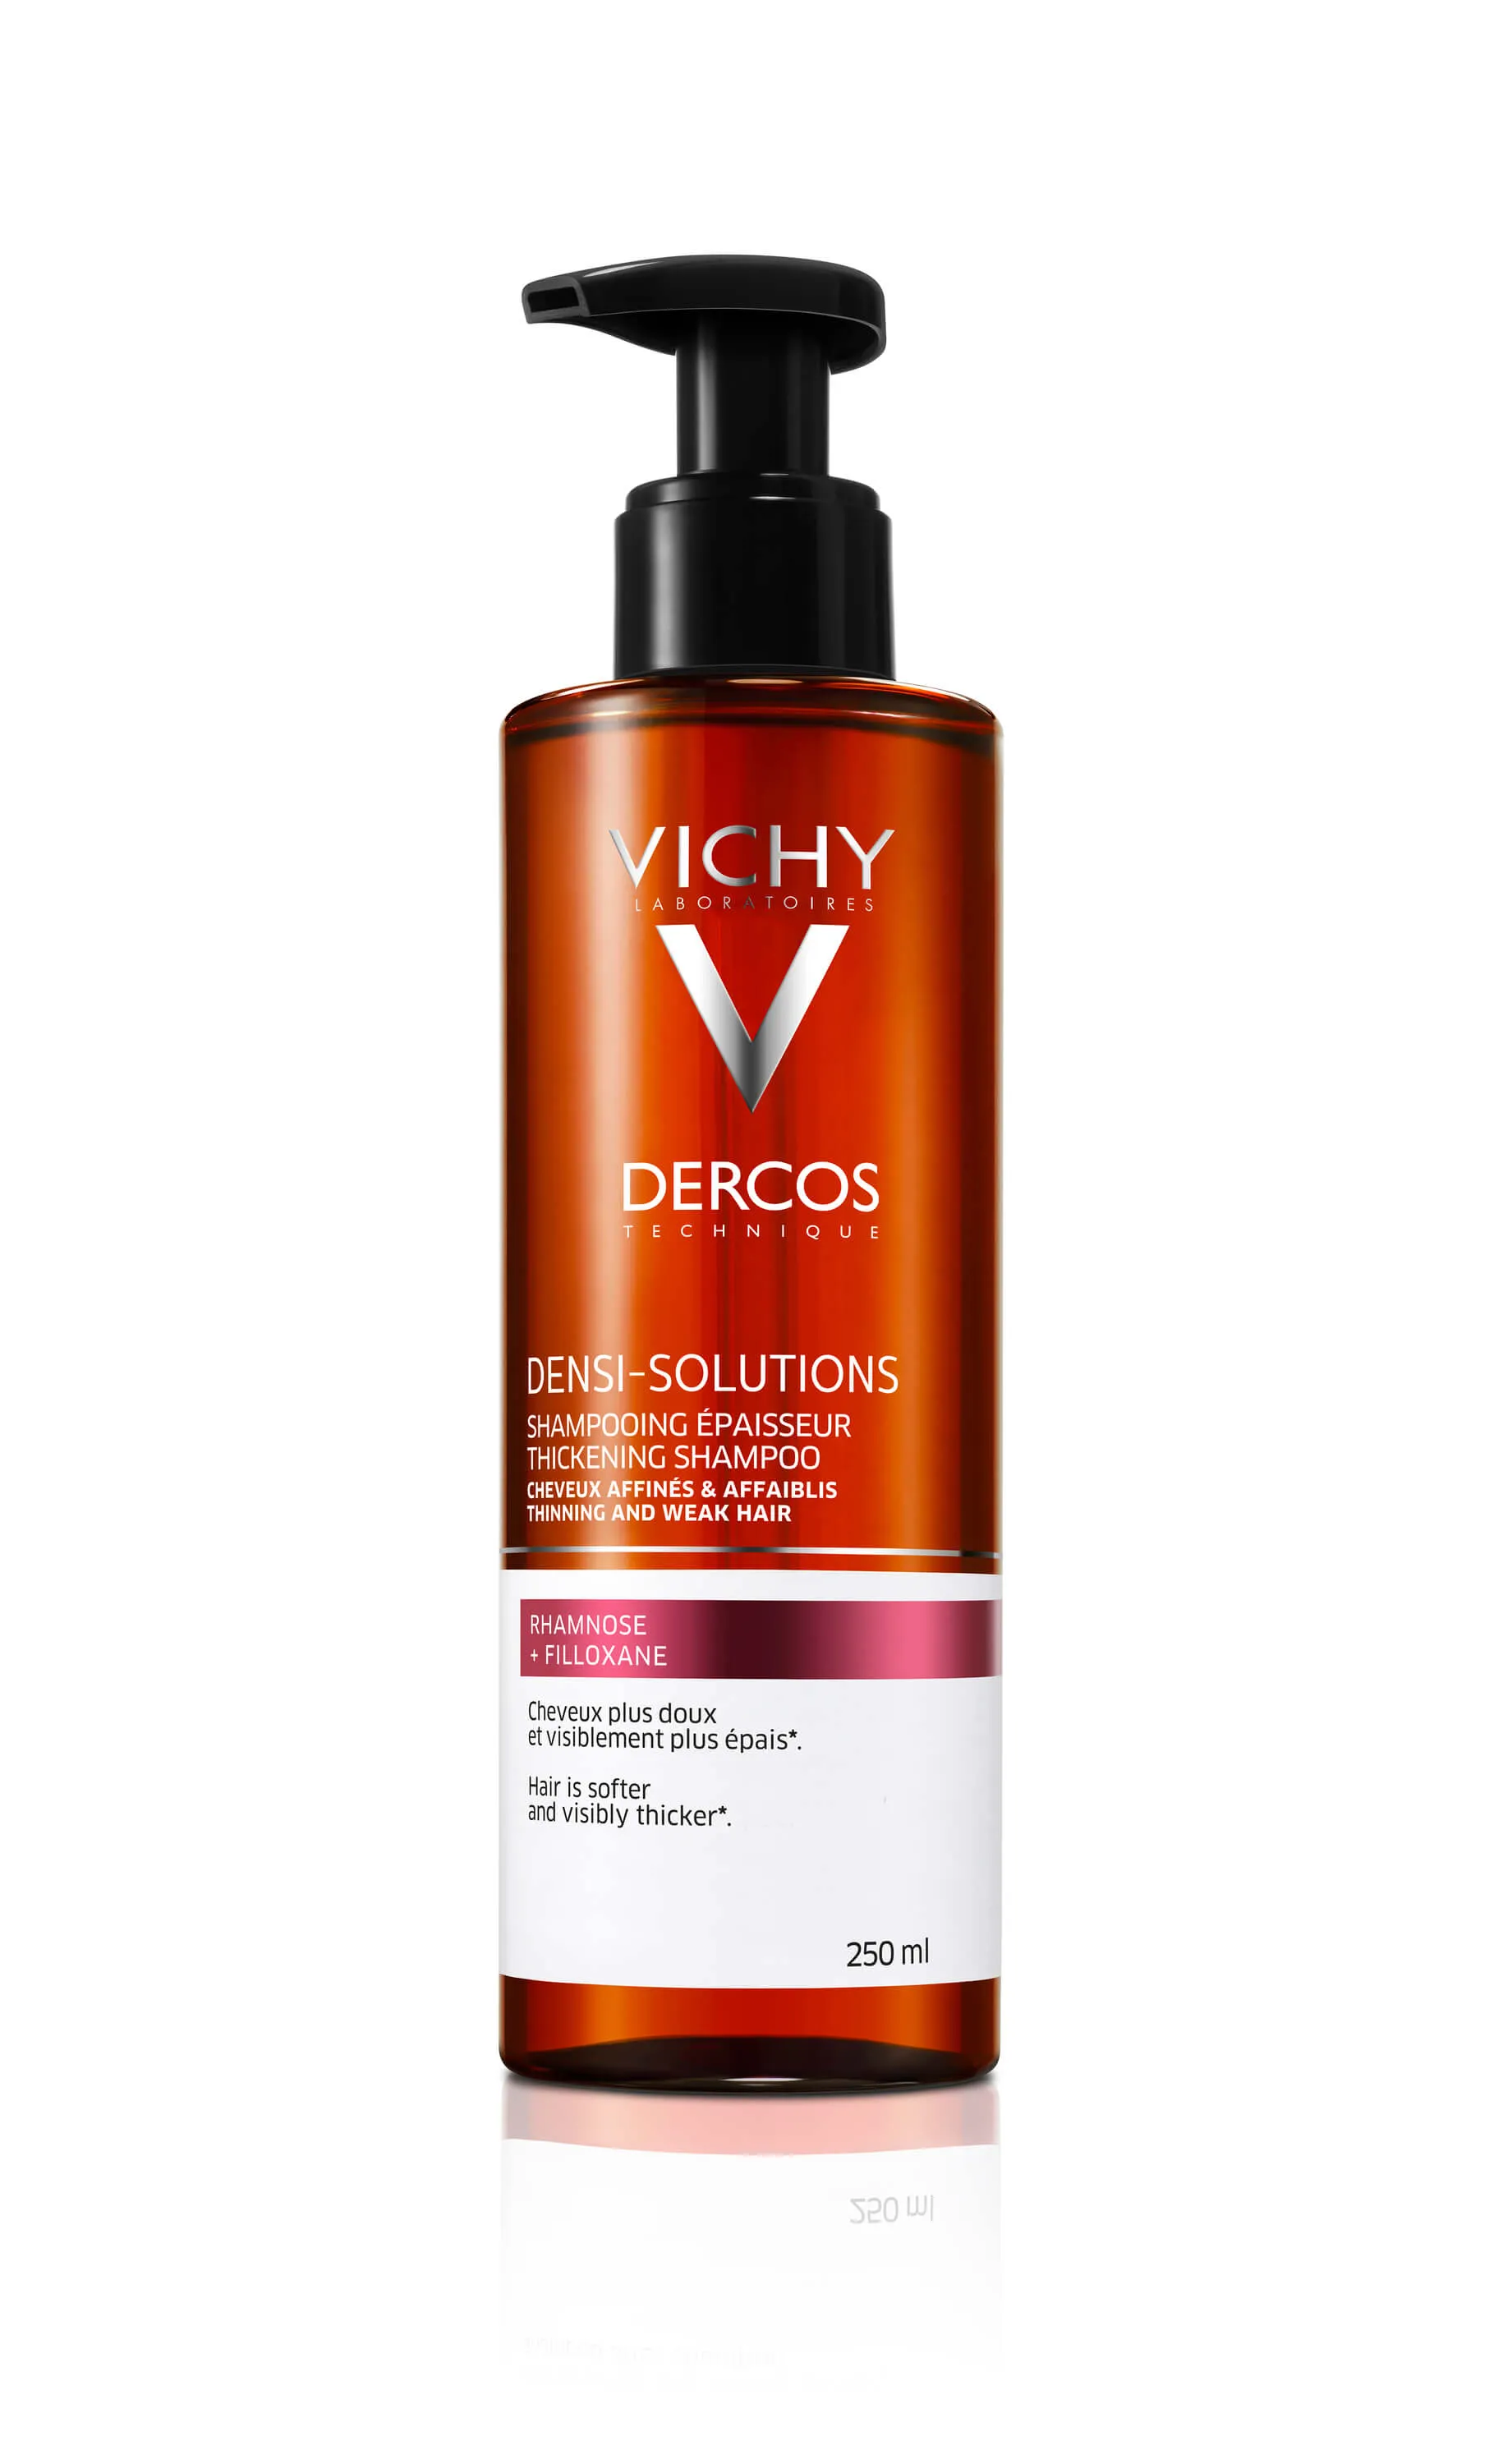 Vichy Dercos Densisolutions, szampon zwiększający objętość włosów, 250 ml